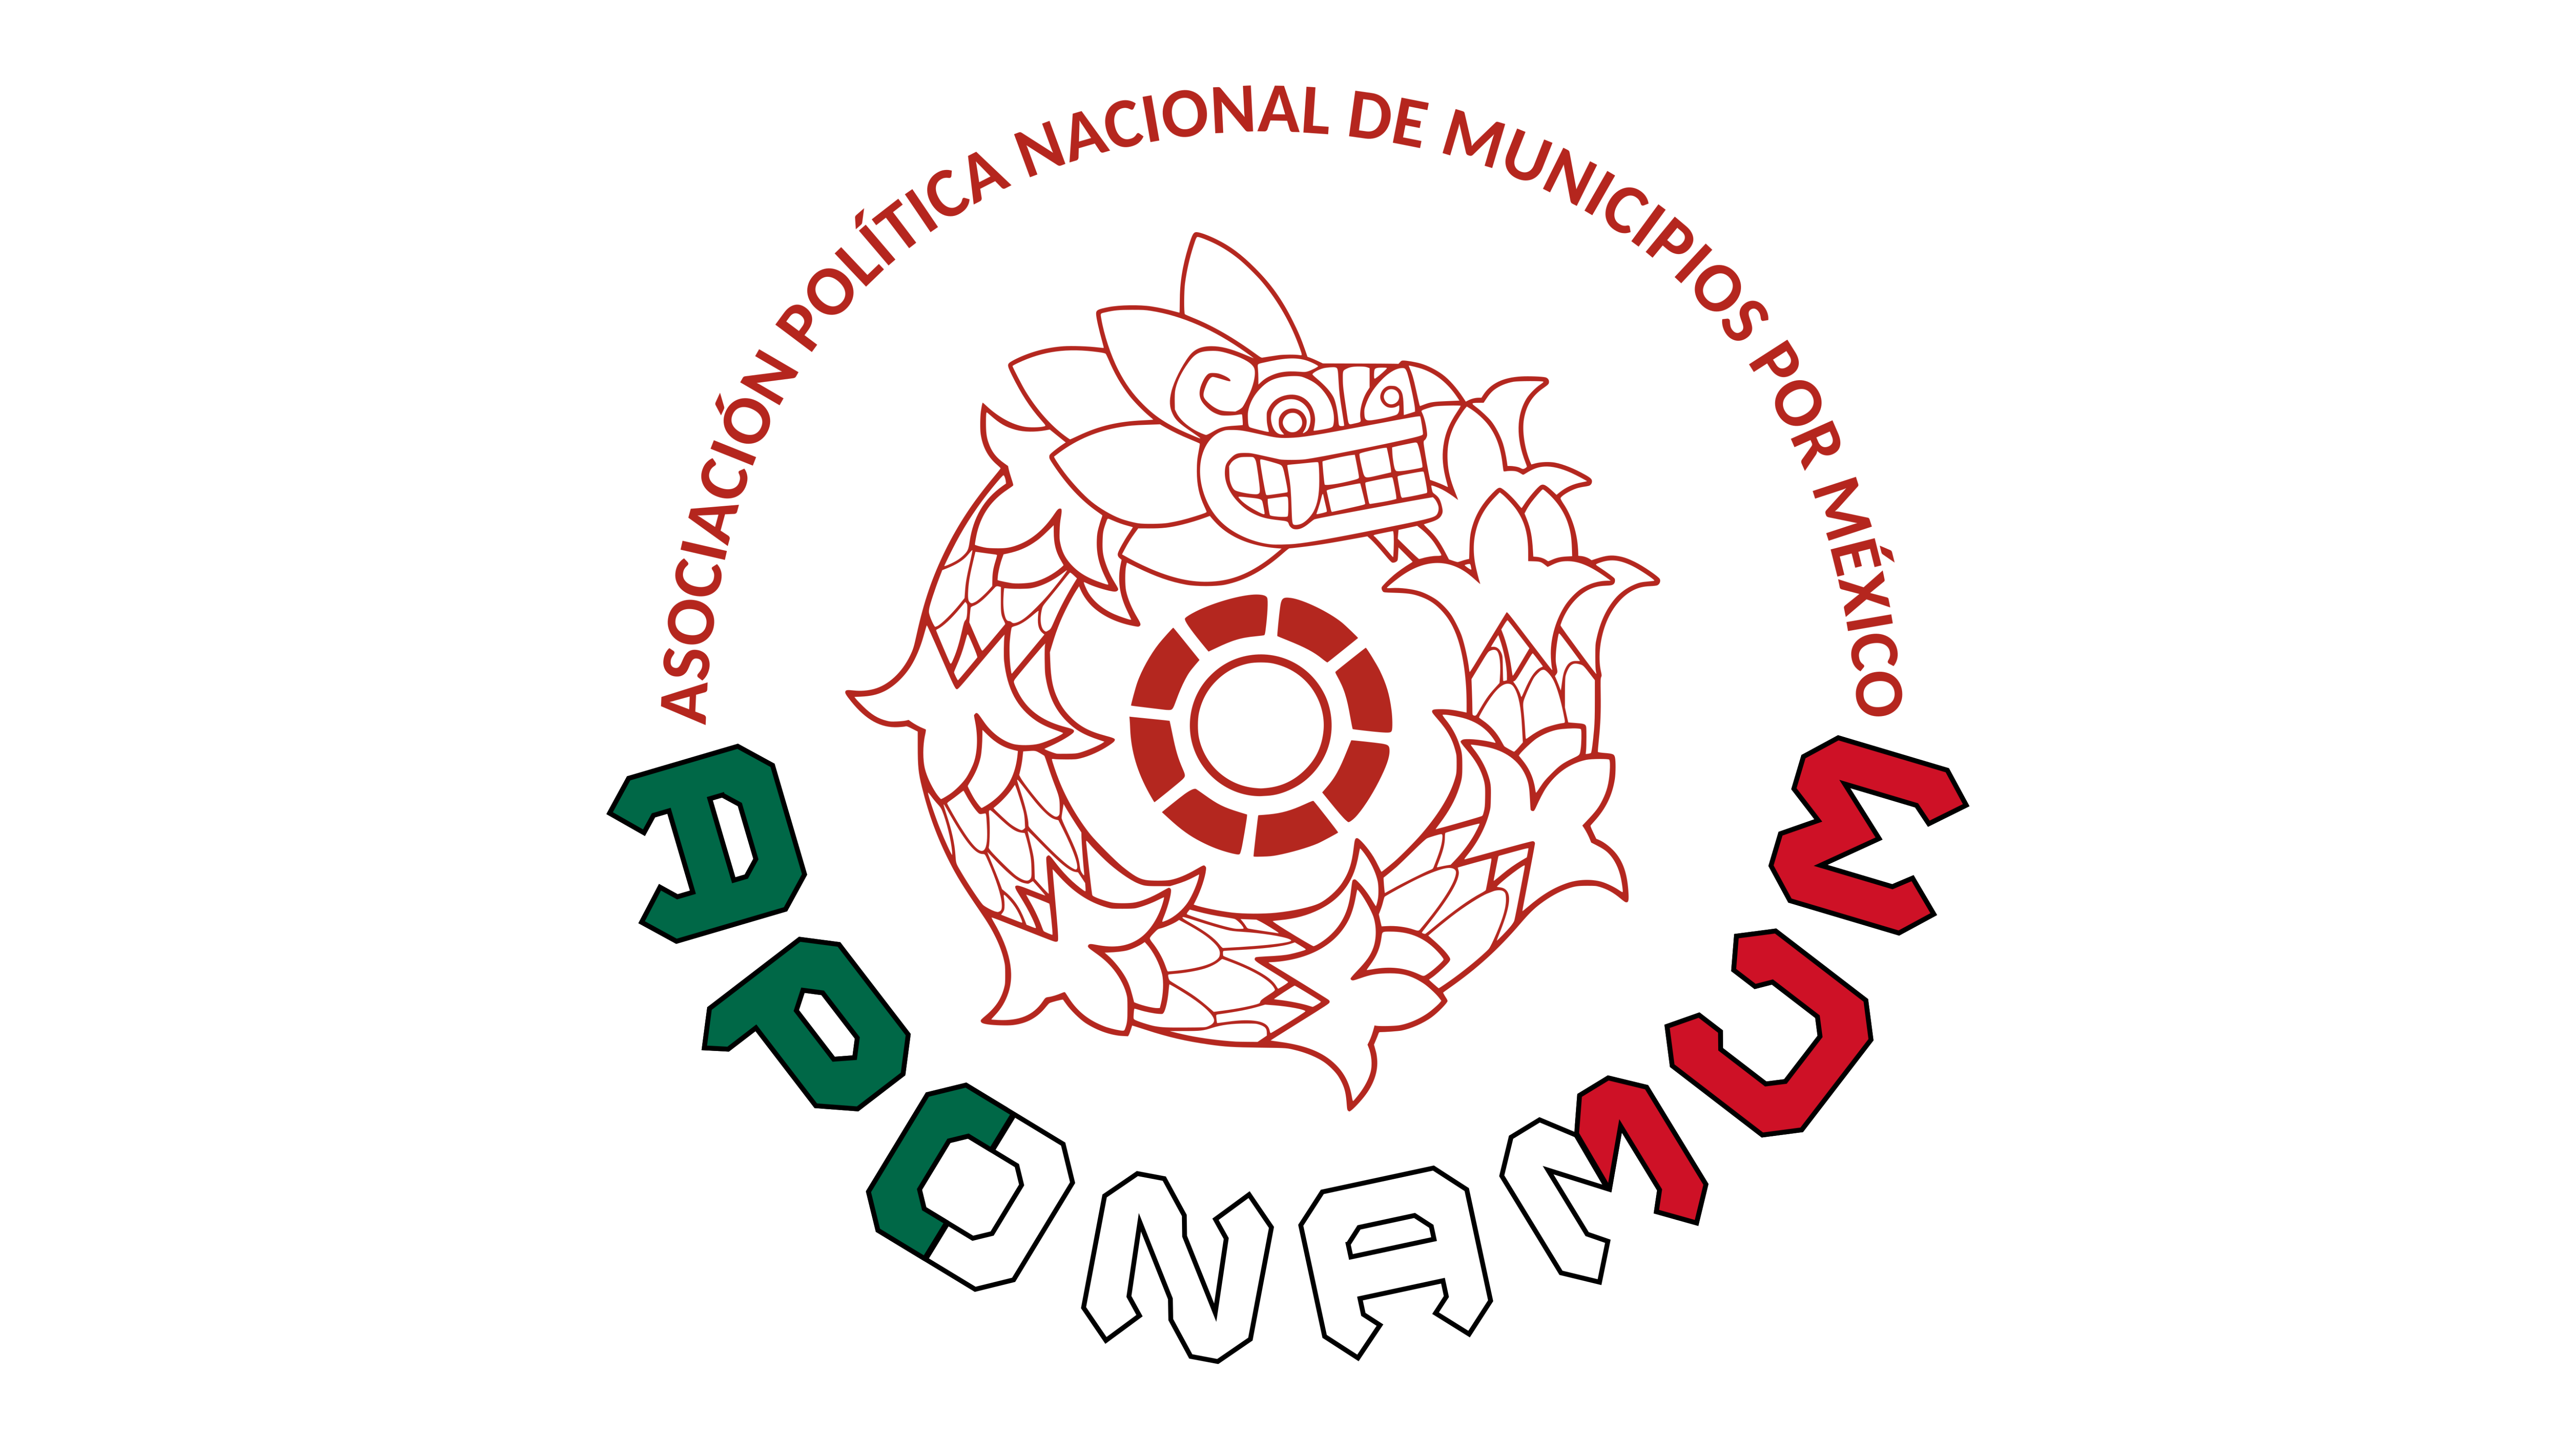 BROCHURE - ASOCIACIÓN DE MUNICIPIOS UNIDOS POR MÉXICO